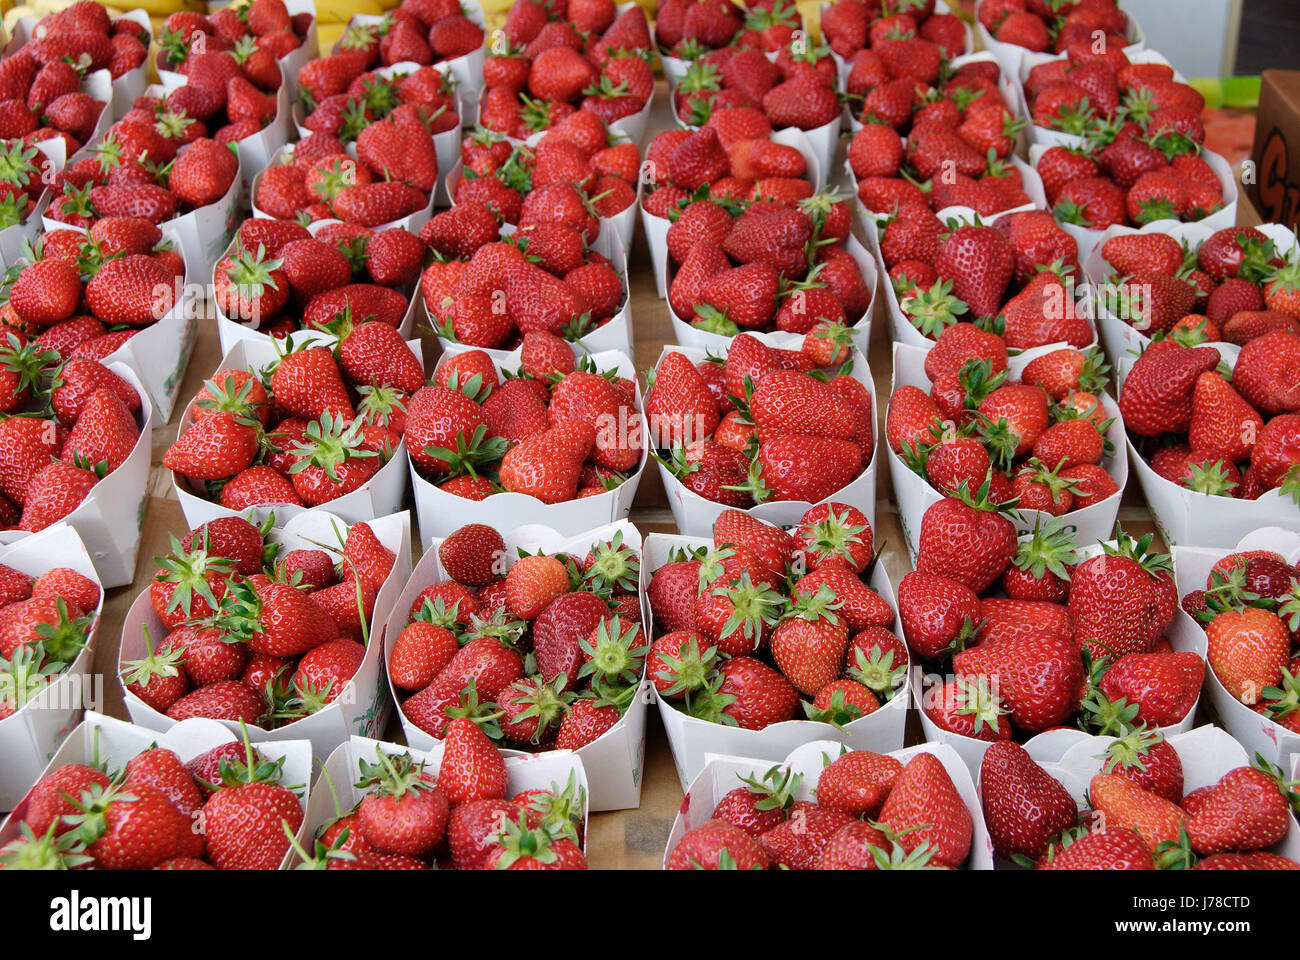 Lebensmittel Nahrungsmittel Obst Erdbeer-Box Boxen rote Erdbeeren Karton  Lager Stockfotografie - Alamy